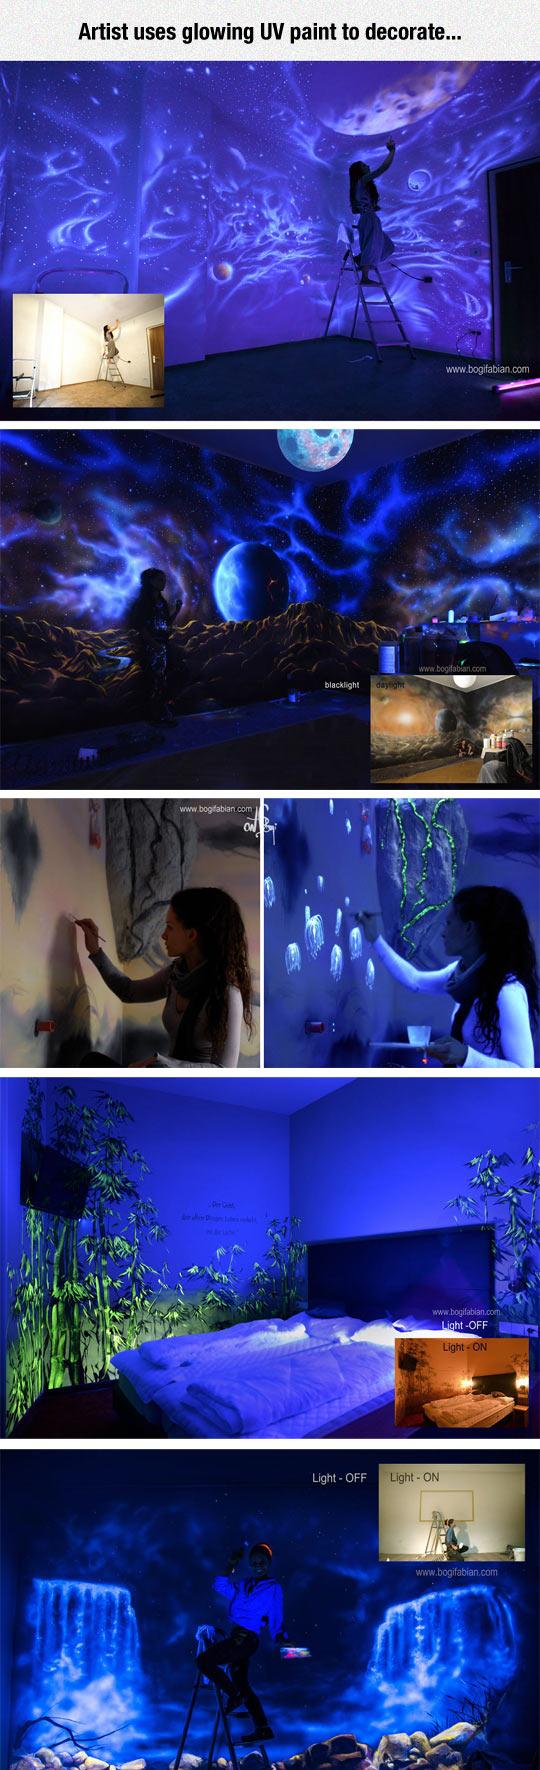 UV+Wall+Art+is+Neat